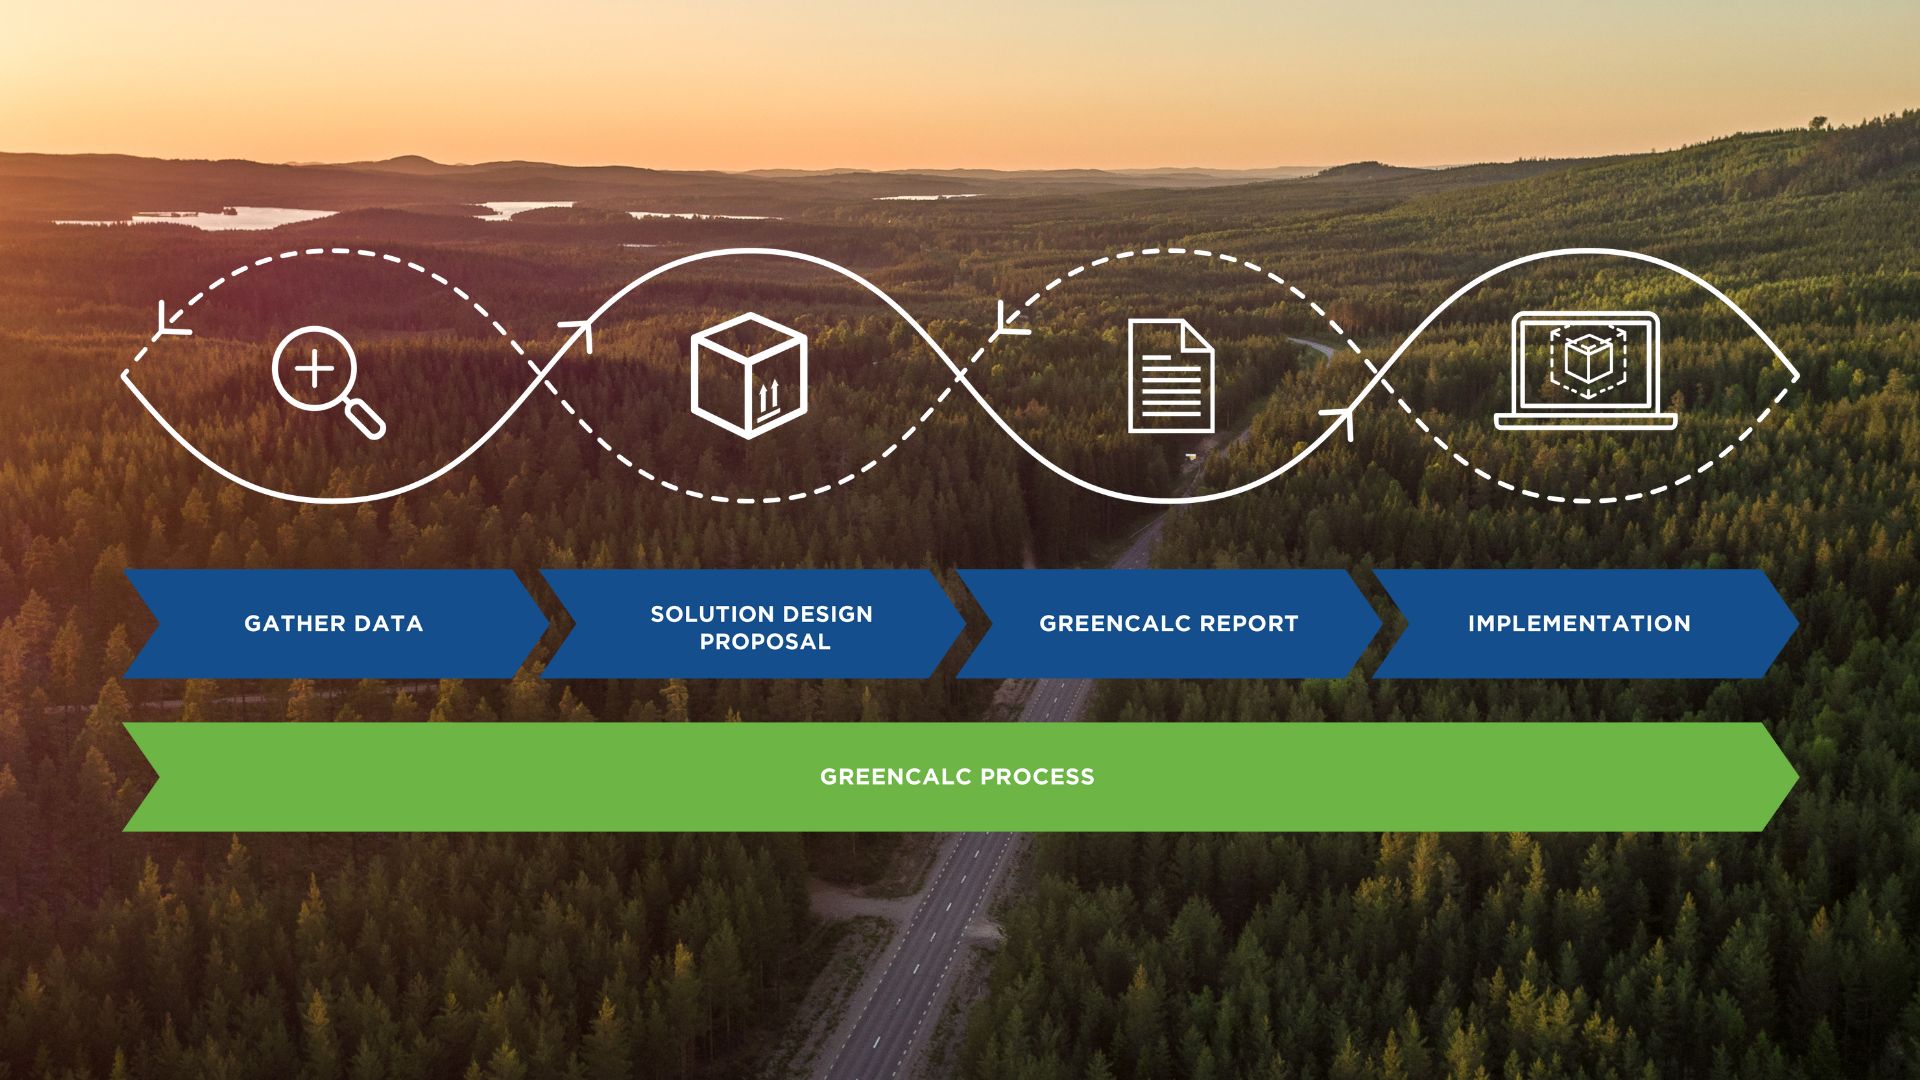 量化您的碳足跡 GreenCalc